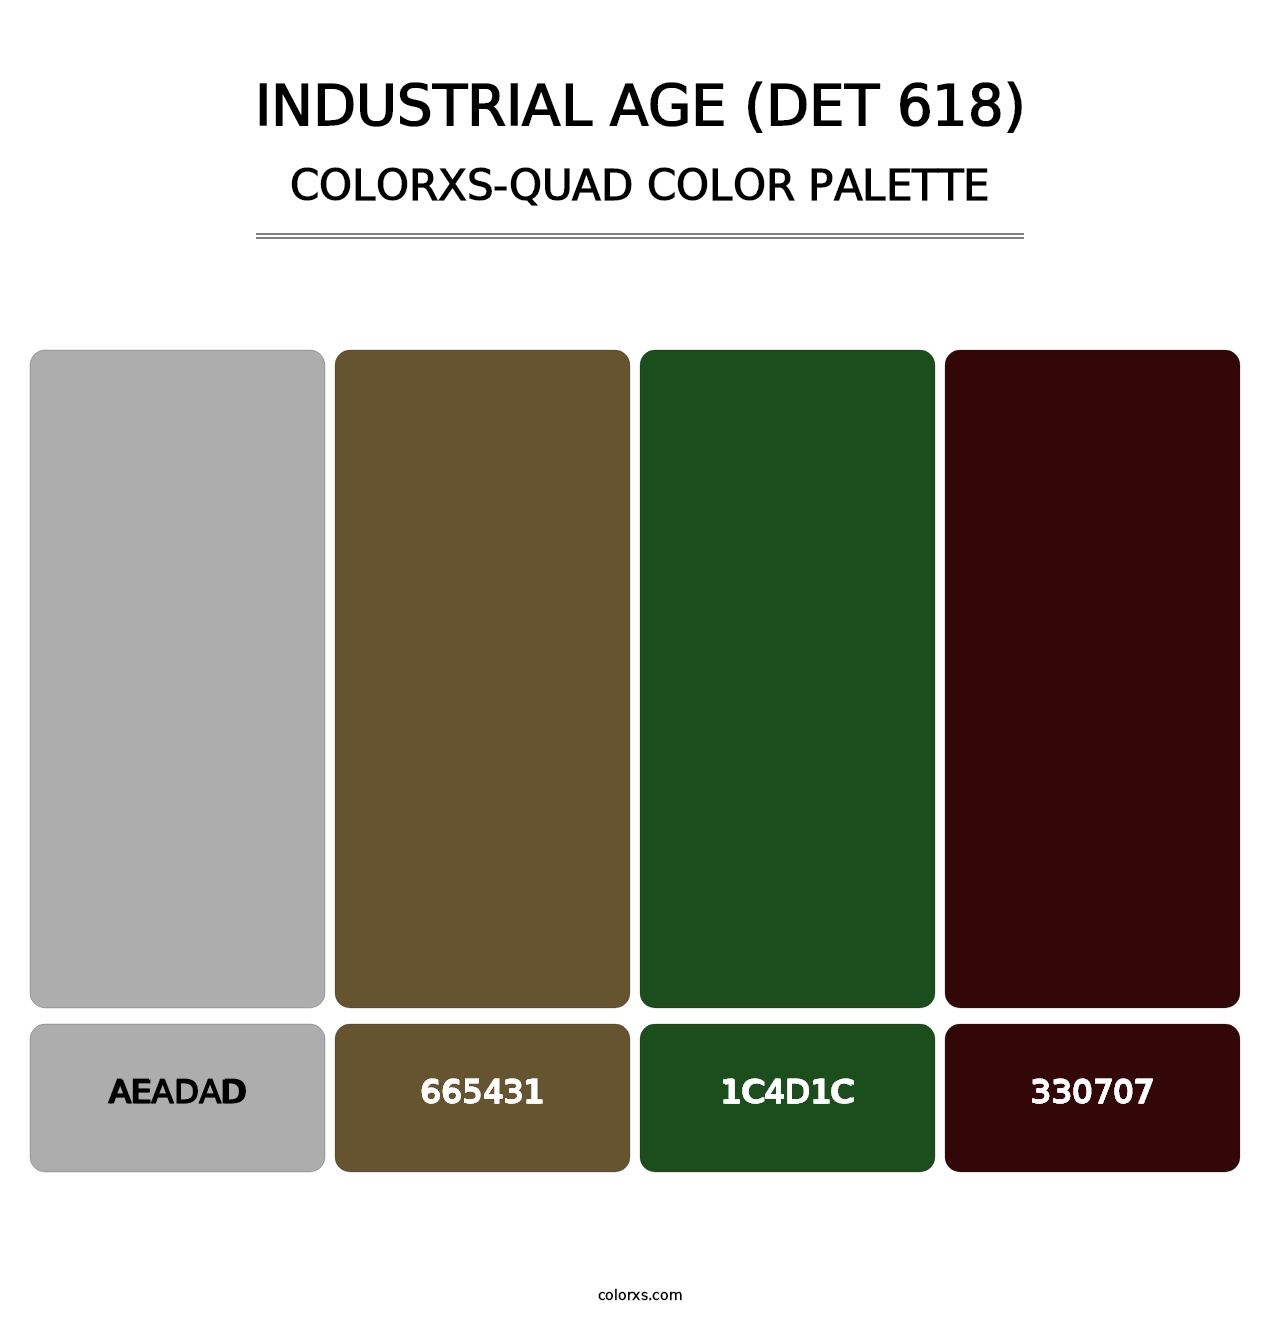 Industrial Age (DET 618) - Colorxs Quad Palette